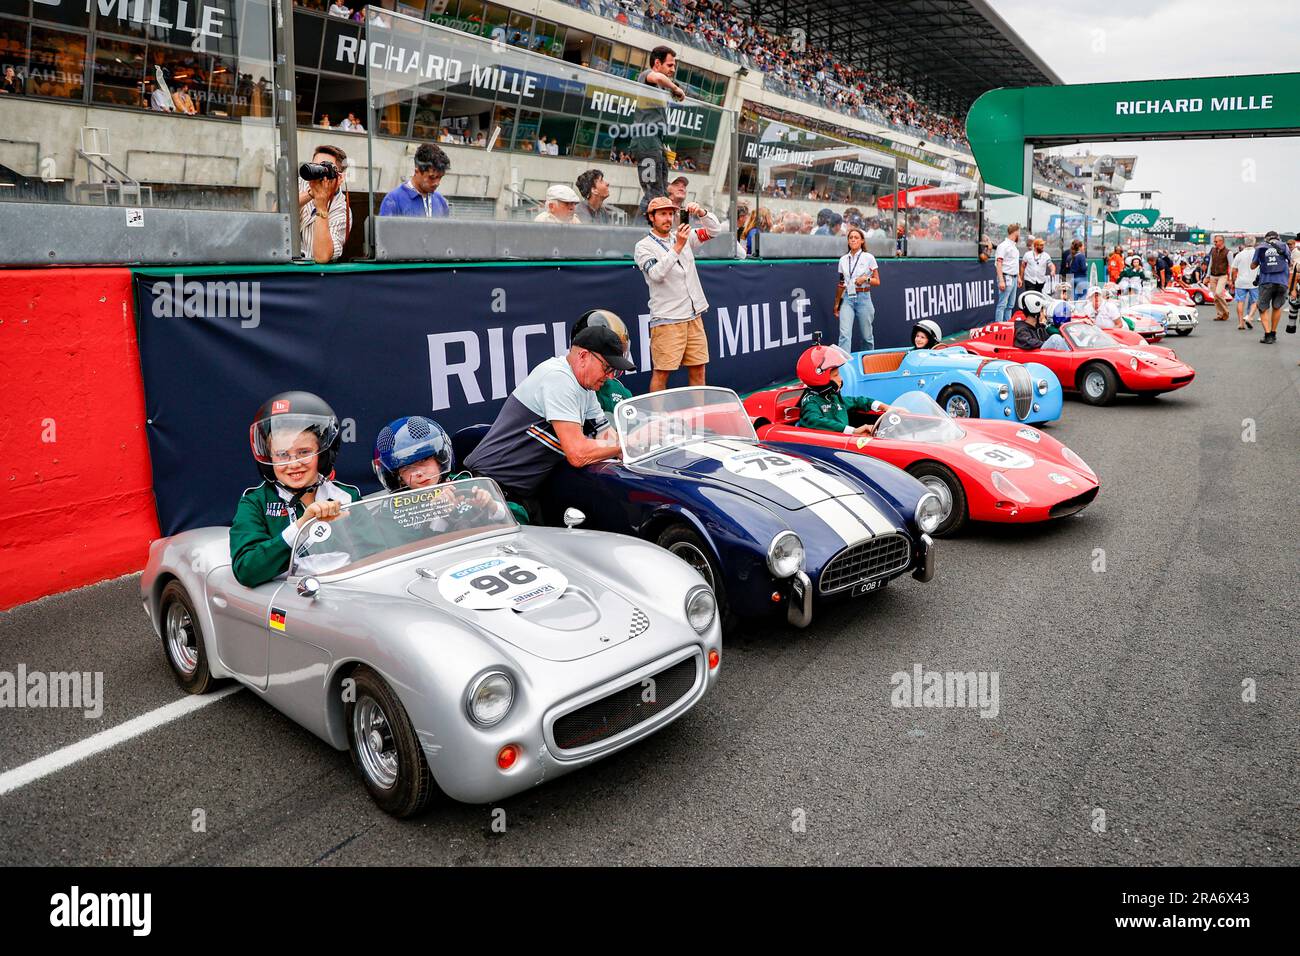 Le Mans, Francia. 1 luglio 2023. 96 Team Richard mille, Ferrari Dino 246,  78 Team Richard mille, Shelby Cobra 289, 1965, 91 HEUTS William (bel),  Bugatti T55, 1932, griglia di partenza, griglia